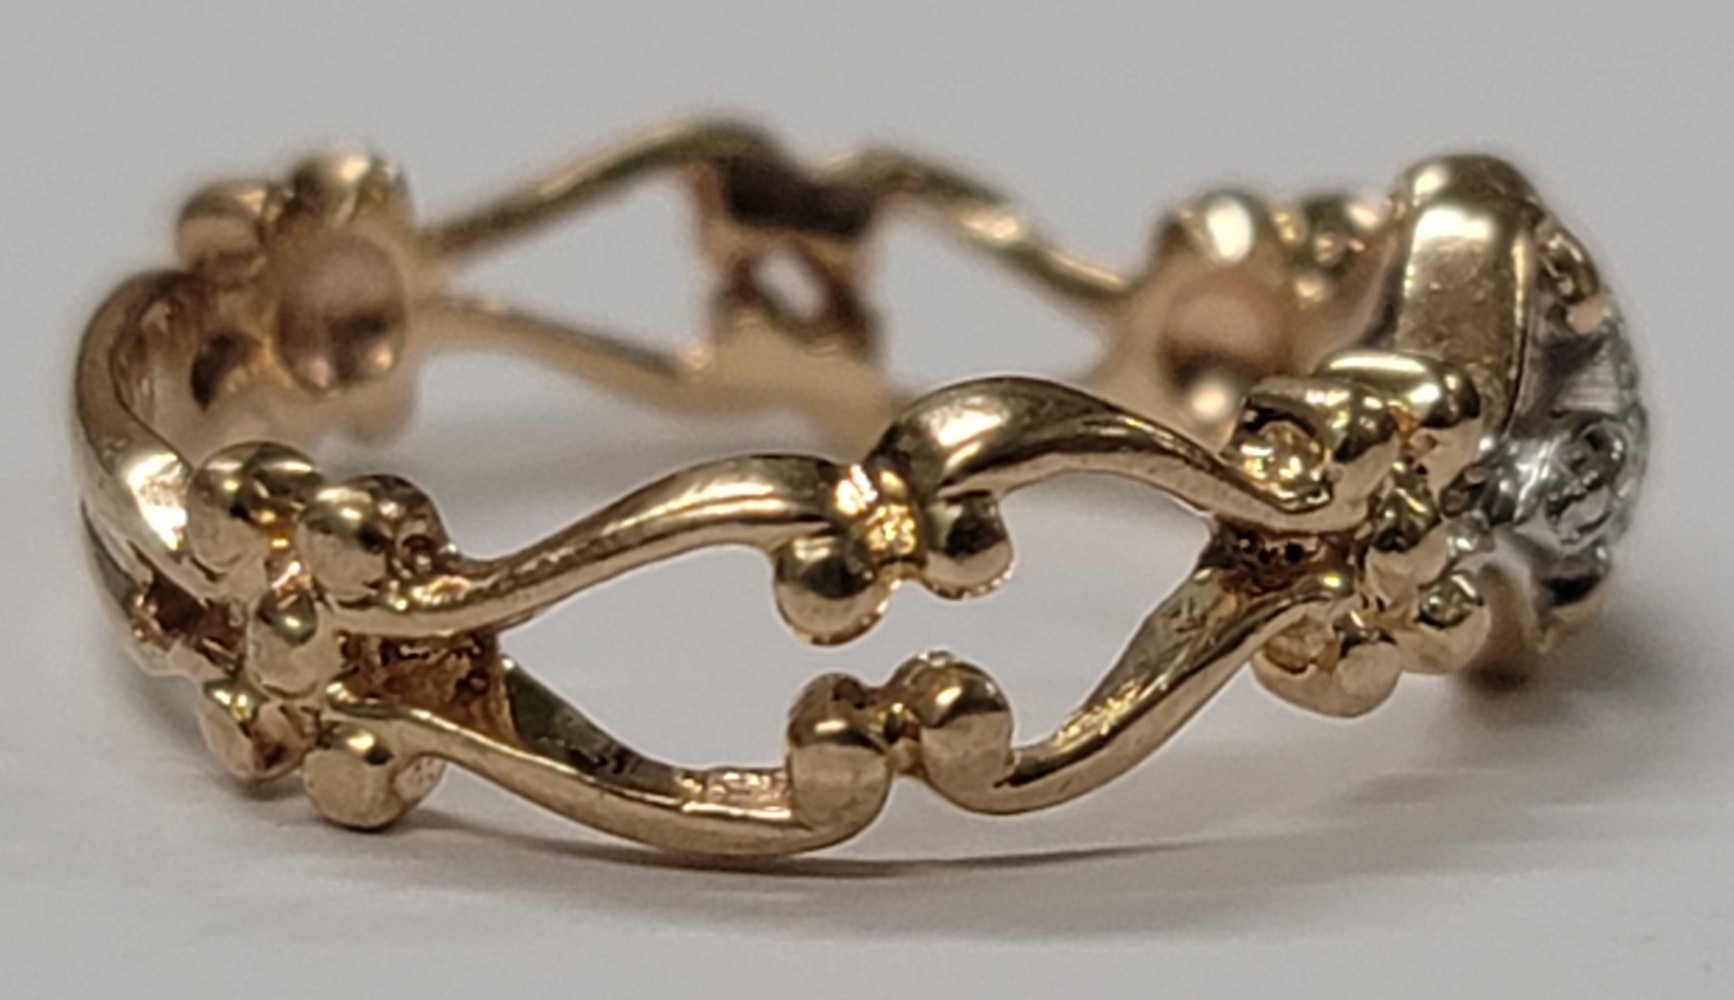 10 Karat Yellow Gold Band Ring - Size: 7